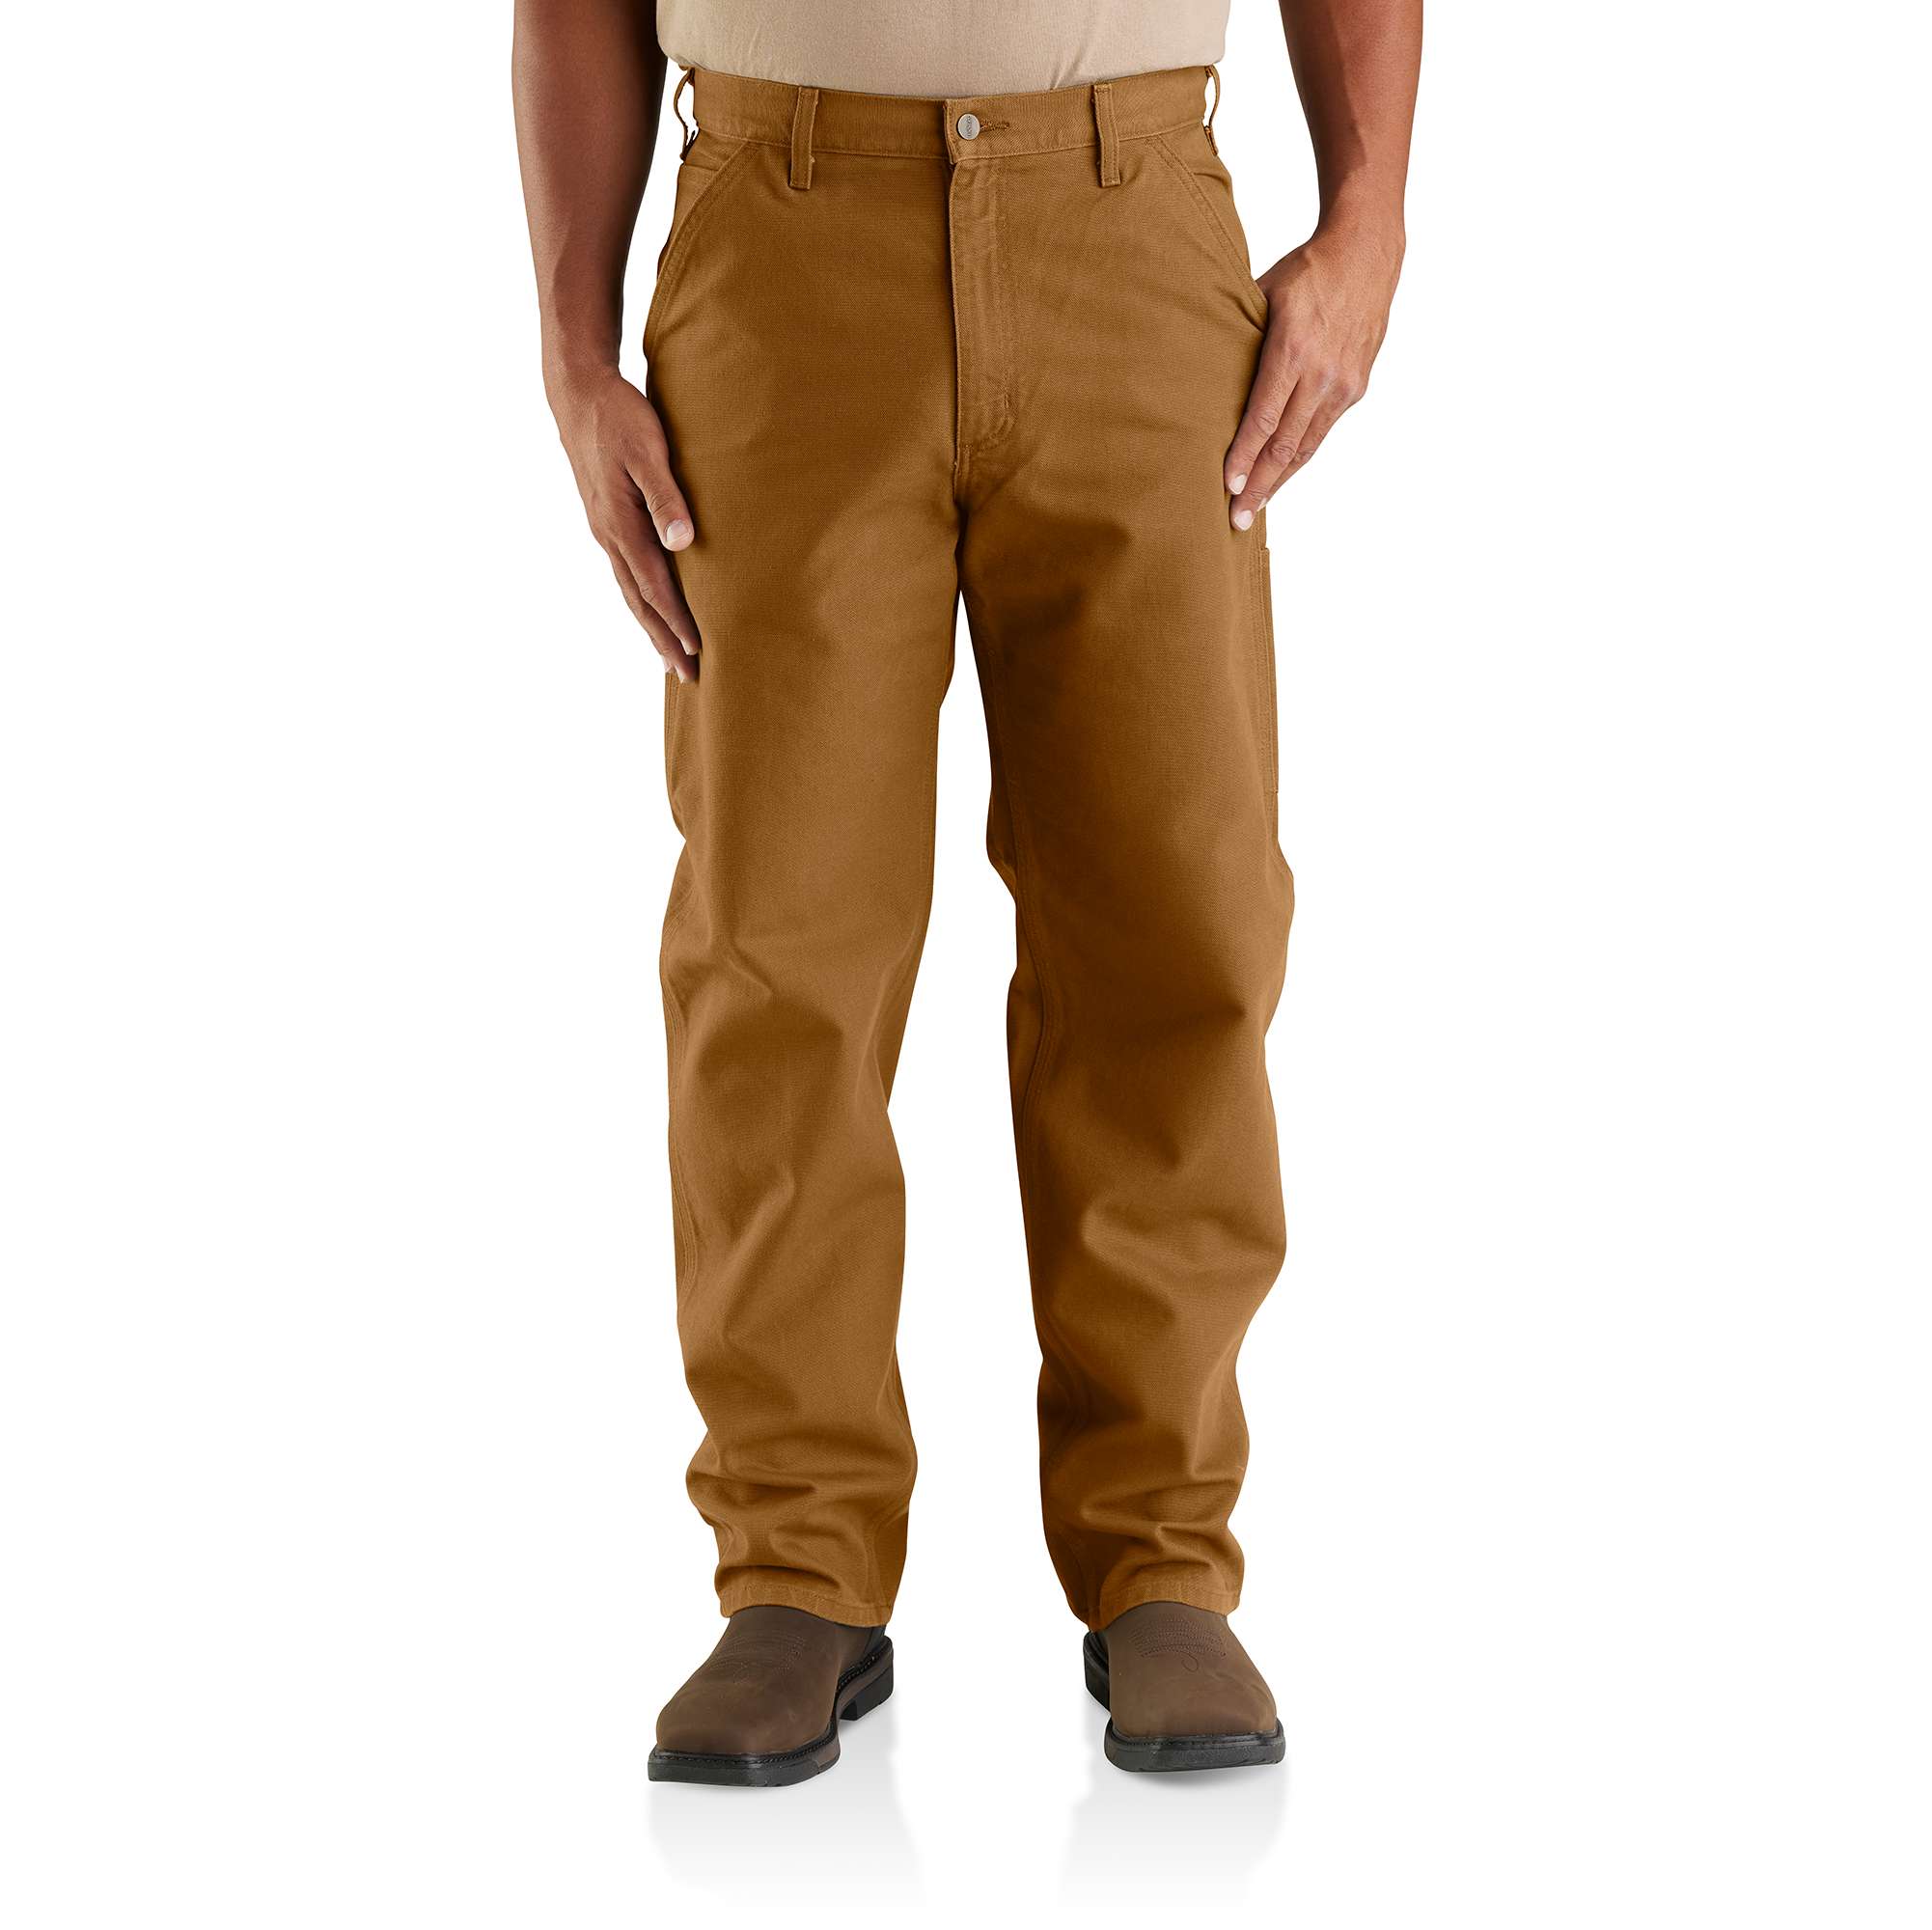 carhartt carpenter pants and a nylon muji collarless shirt, thoughts? :  r/mensfashion